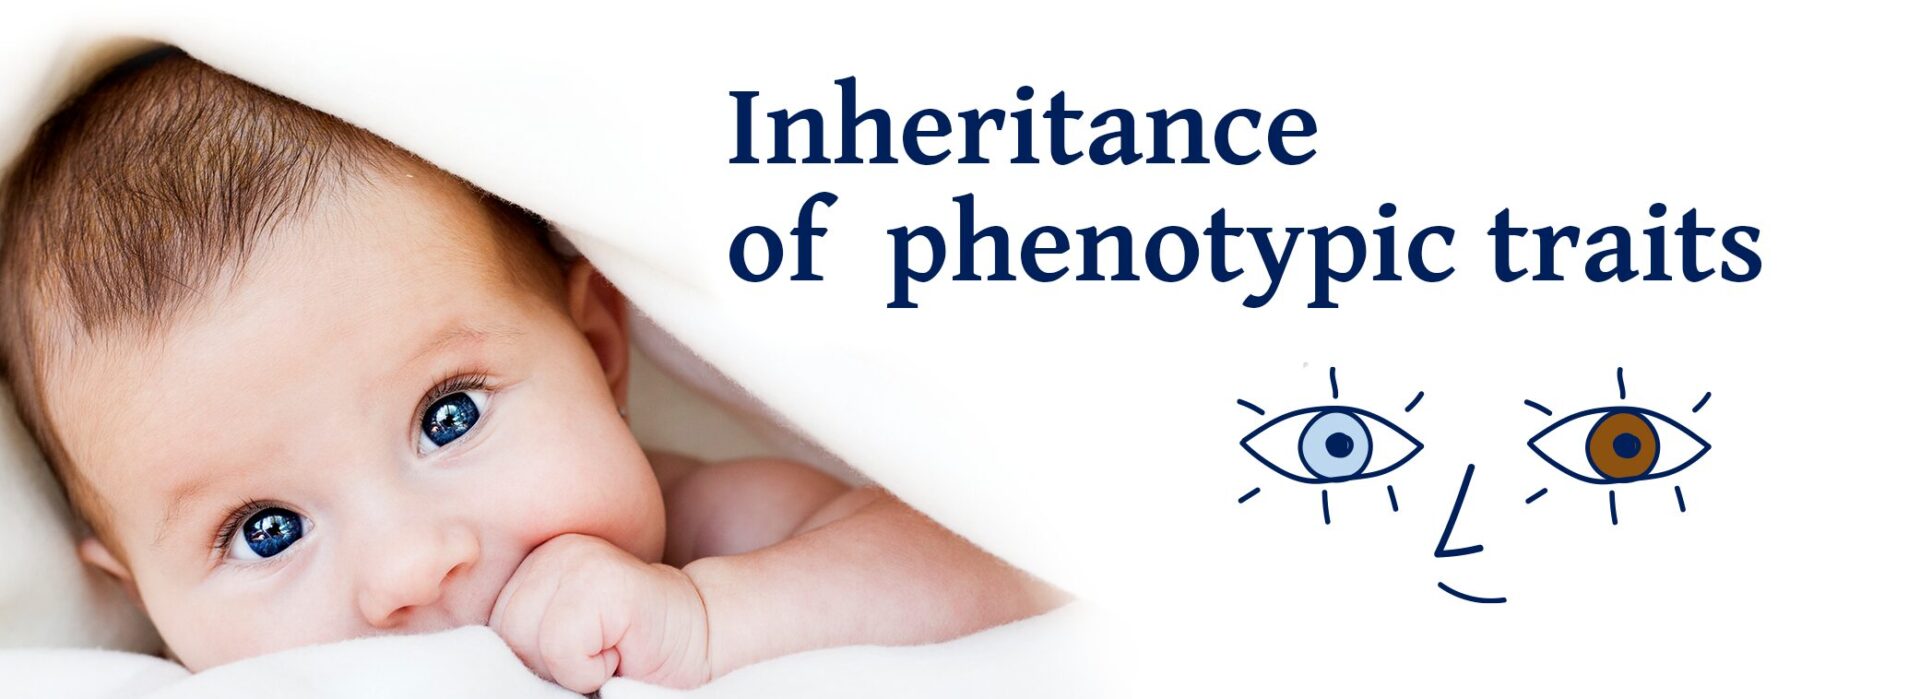 Inheritance of phenotypic traits